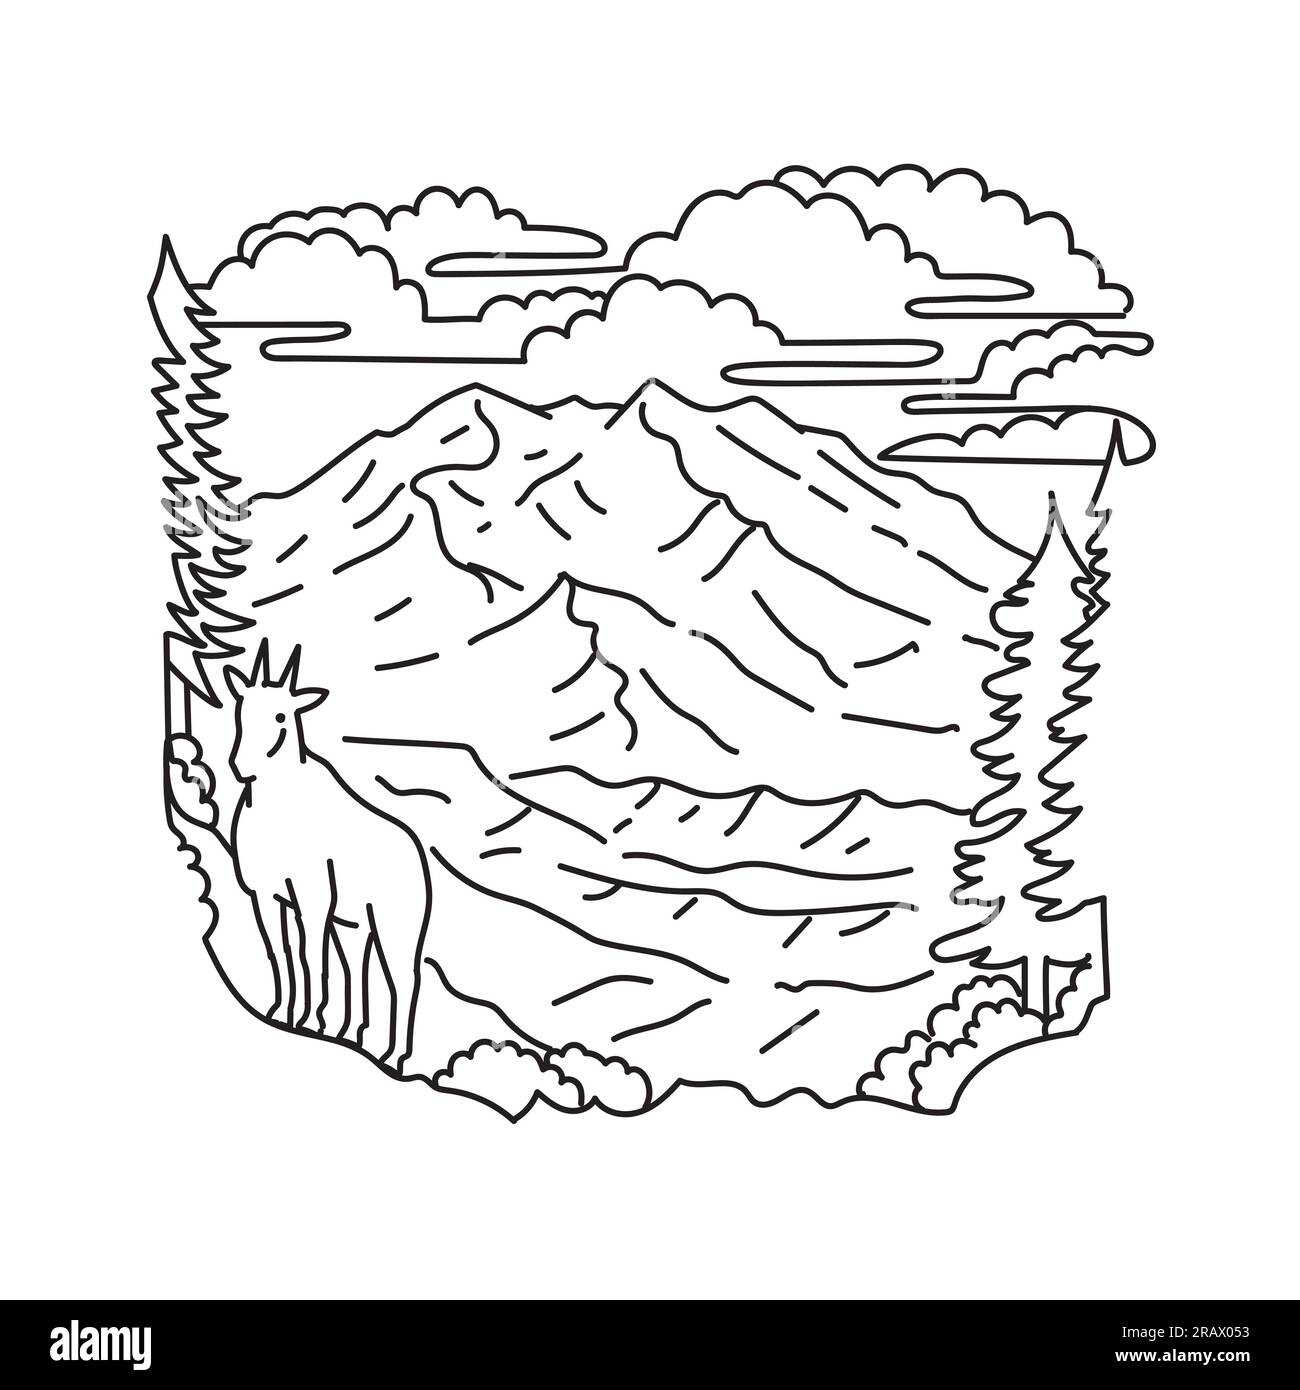 Mono-Line-Darstellung von Bergziegen im Denali-Nationalpark und Naturschutzgebiet, früher bekannt als Mount McKinley-Nationalpark Alaska im Vereinigten Staaten Stockfoto